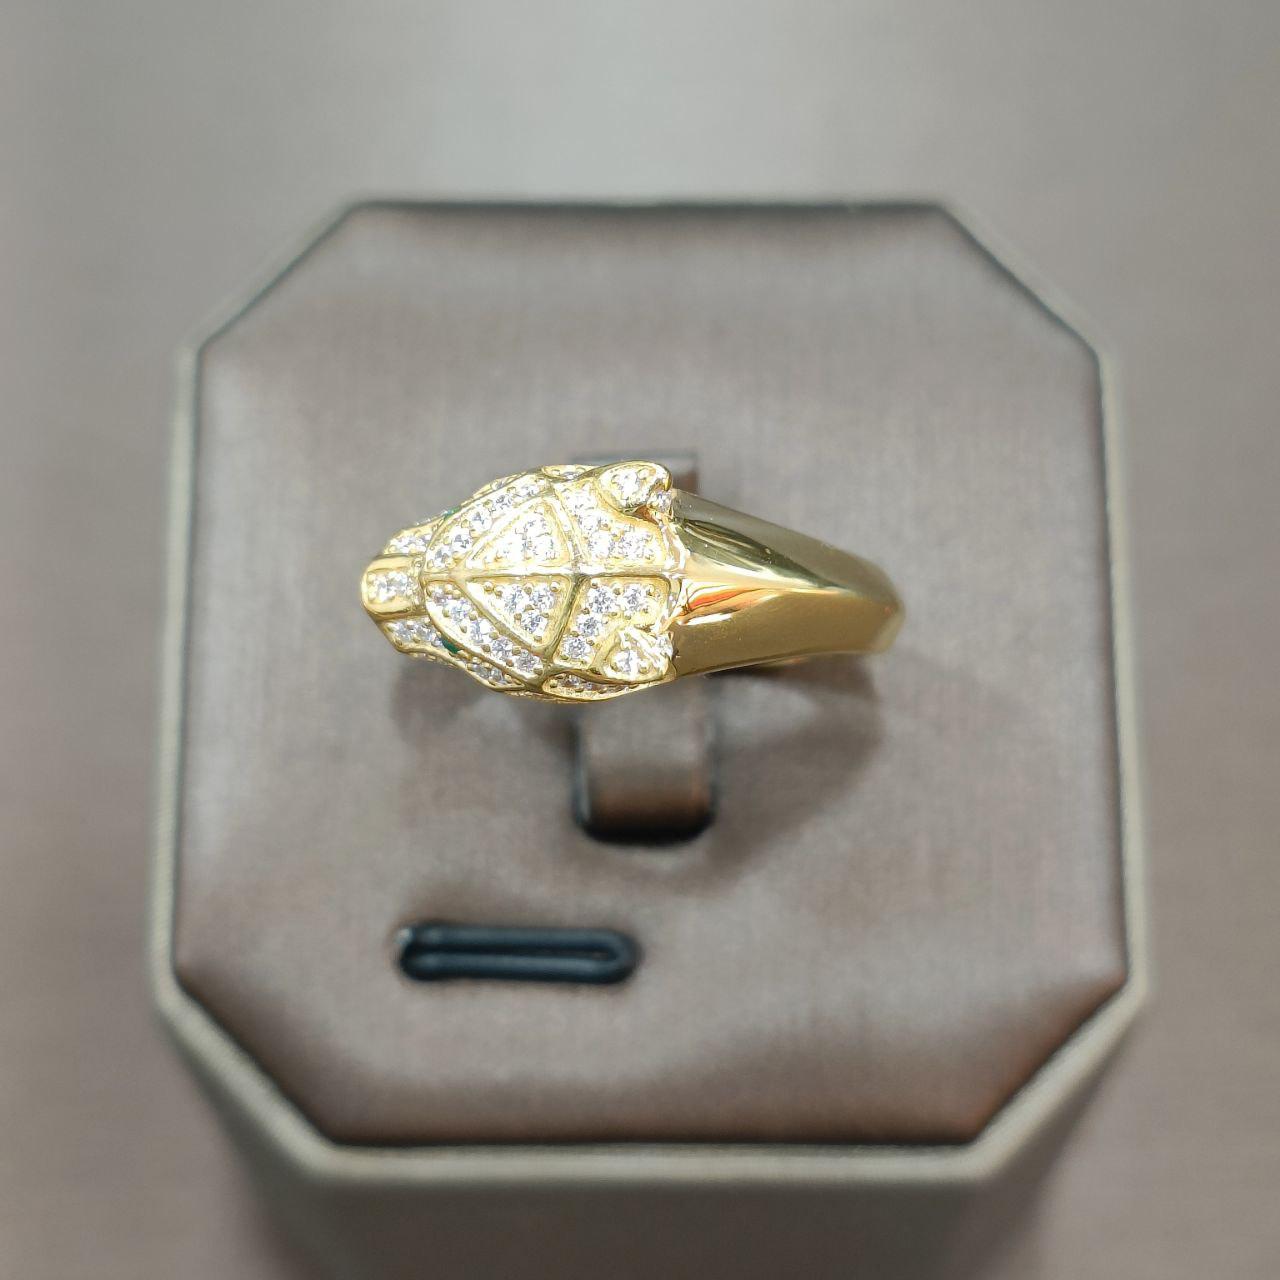 22k / 916 Gold Leopard Ring-916 gold-Best Gold Shop